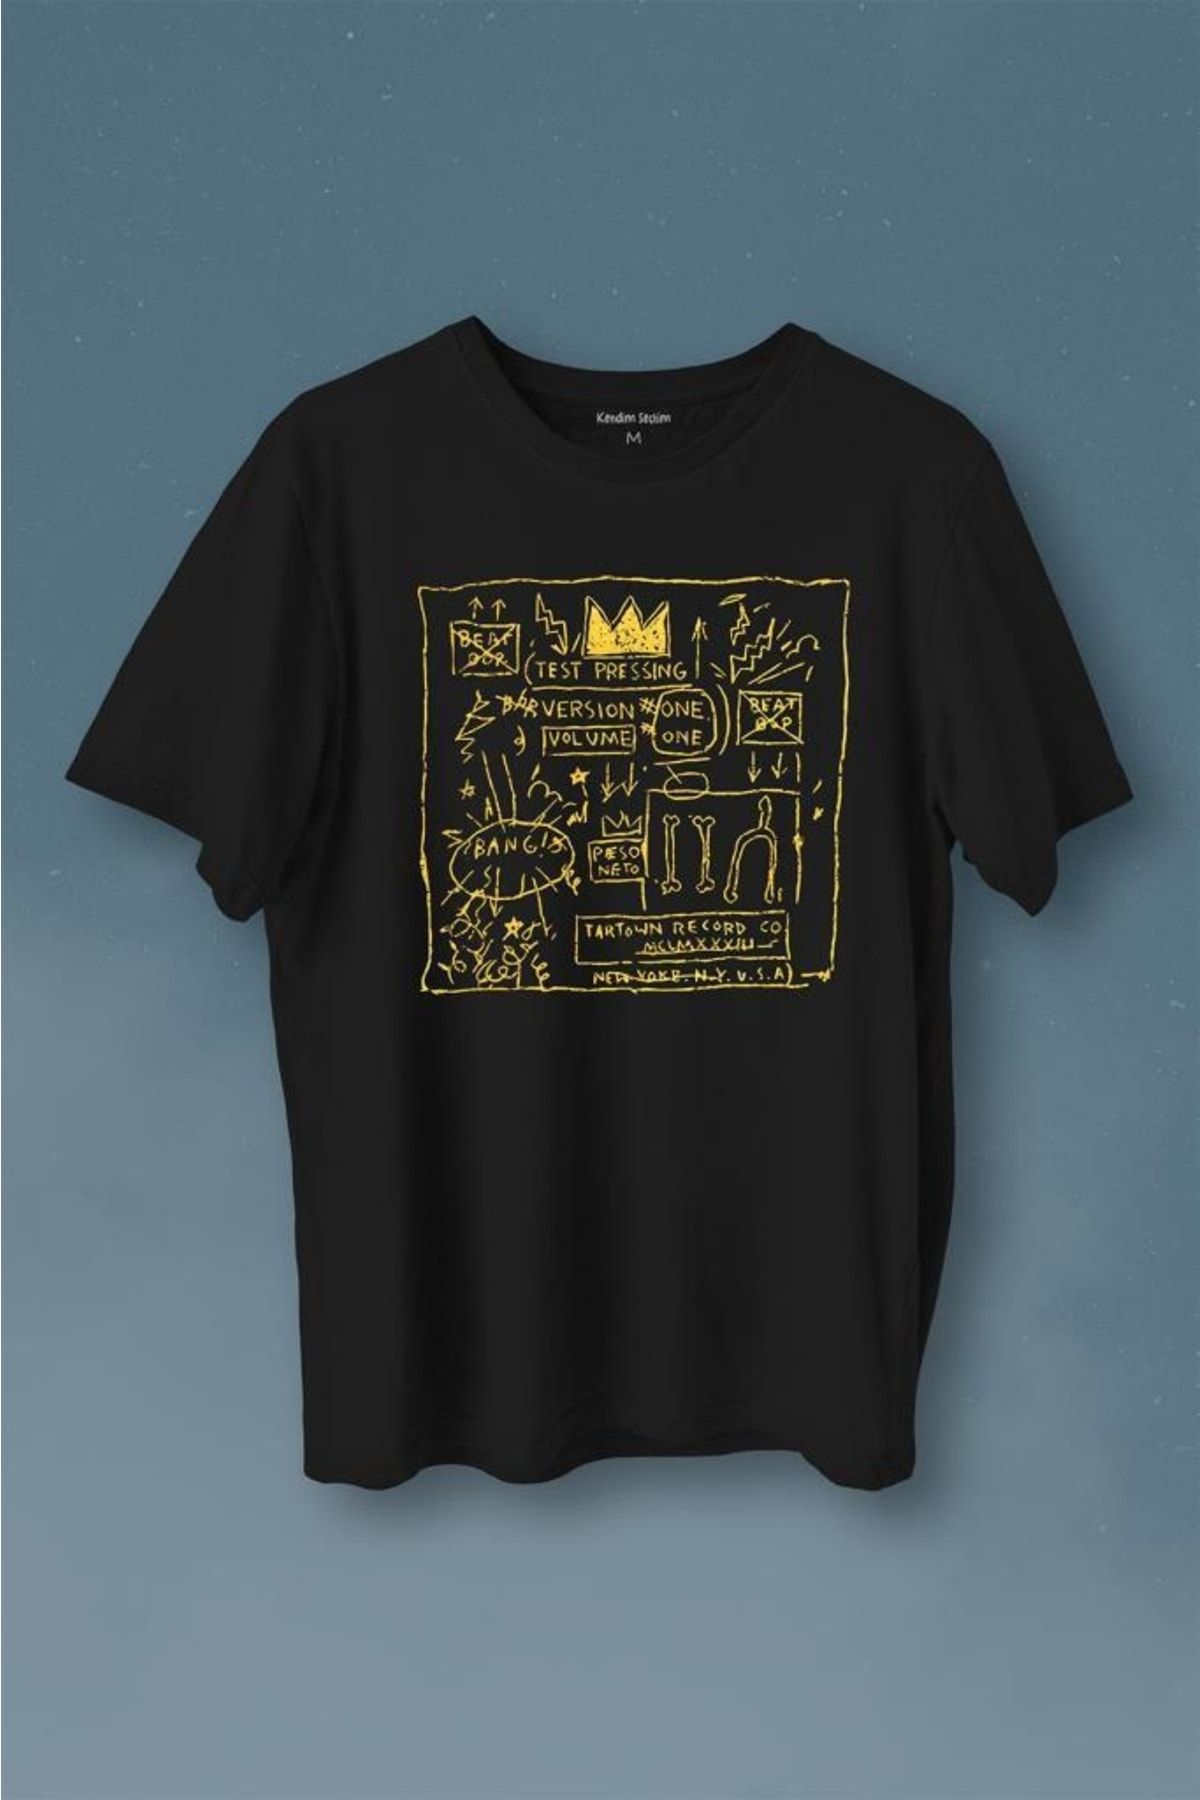 Kendim Seçtim Basquiat Taç Kral King Sanat Pop Art Baskılı Tişört Unisex T-shirt